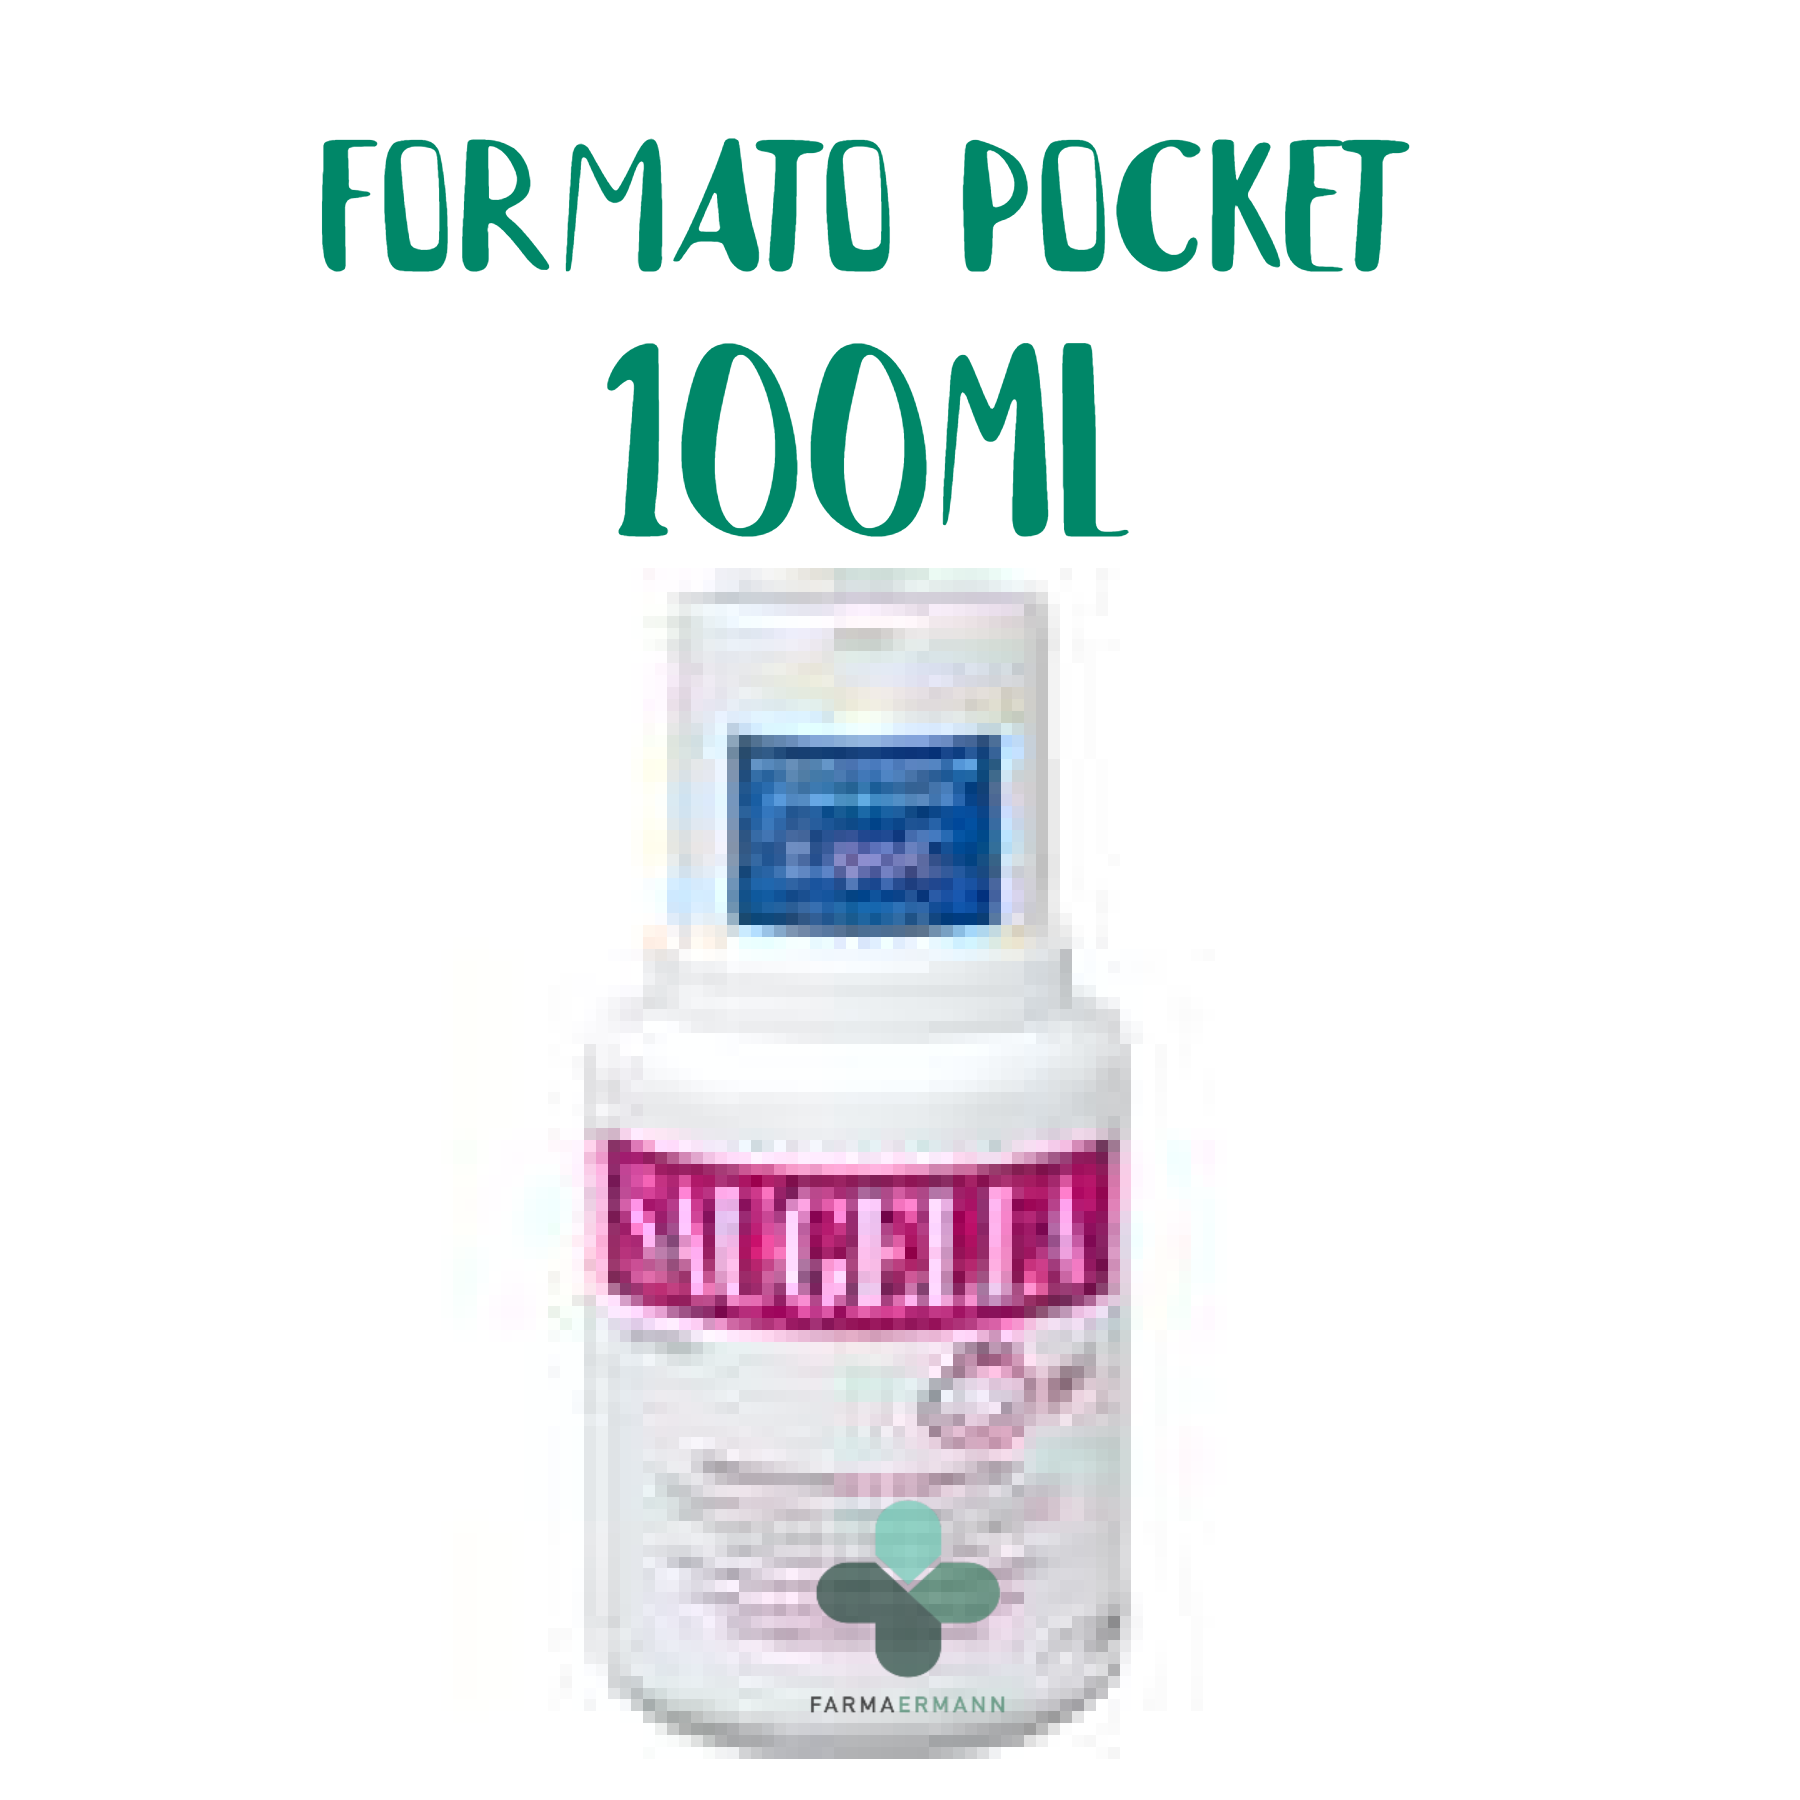 Mylan Saugella Girl detergente intimo per bambine e pre adolescenti (formato pocket 100 ml)